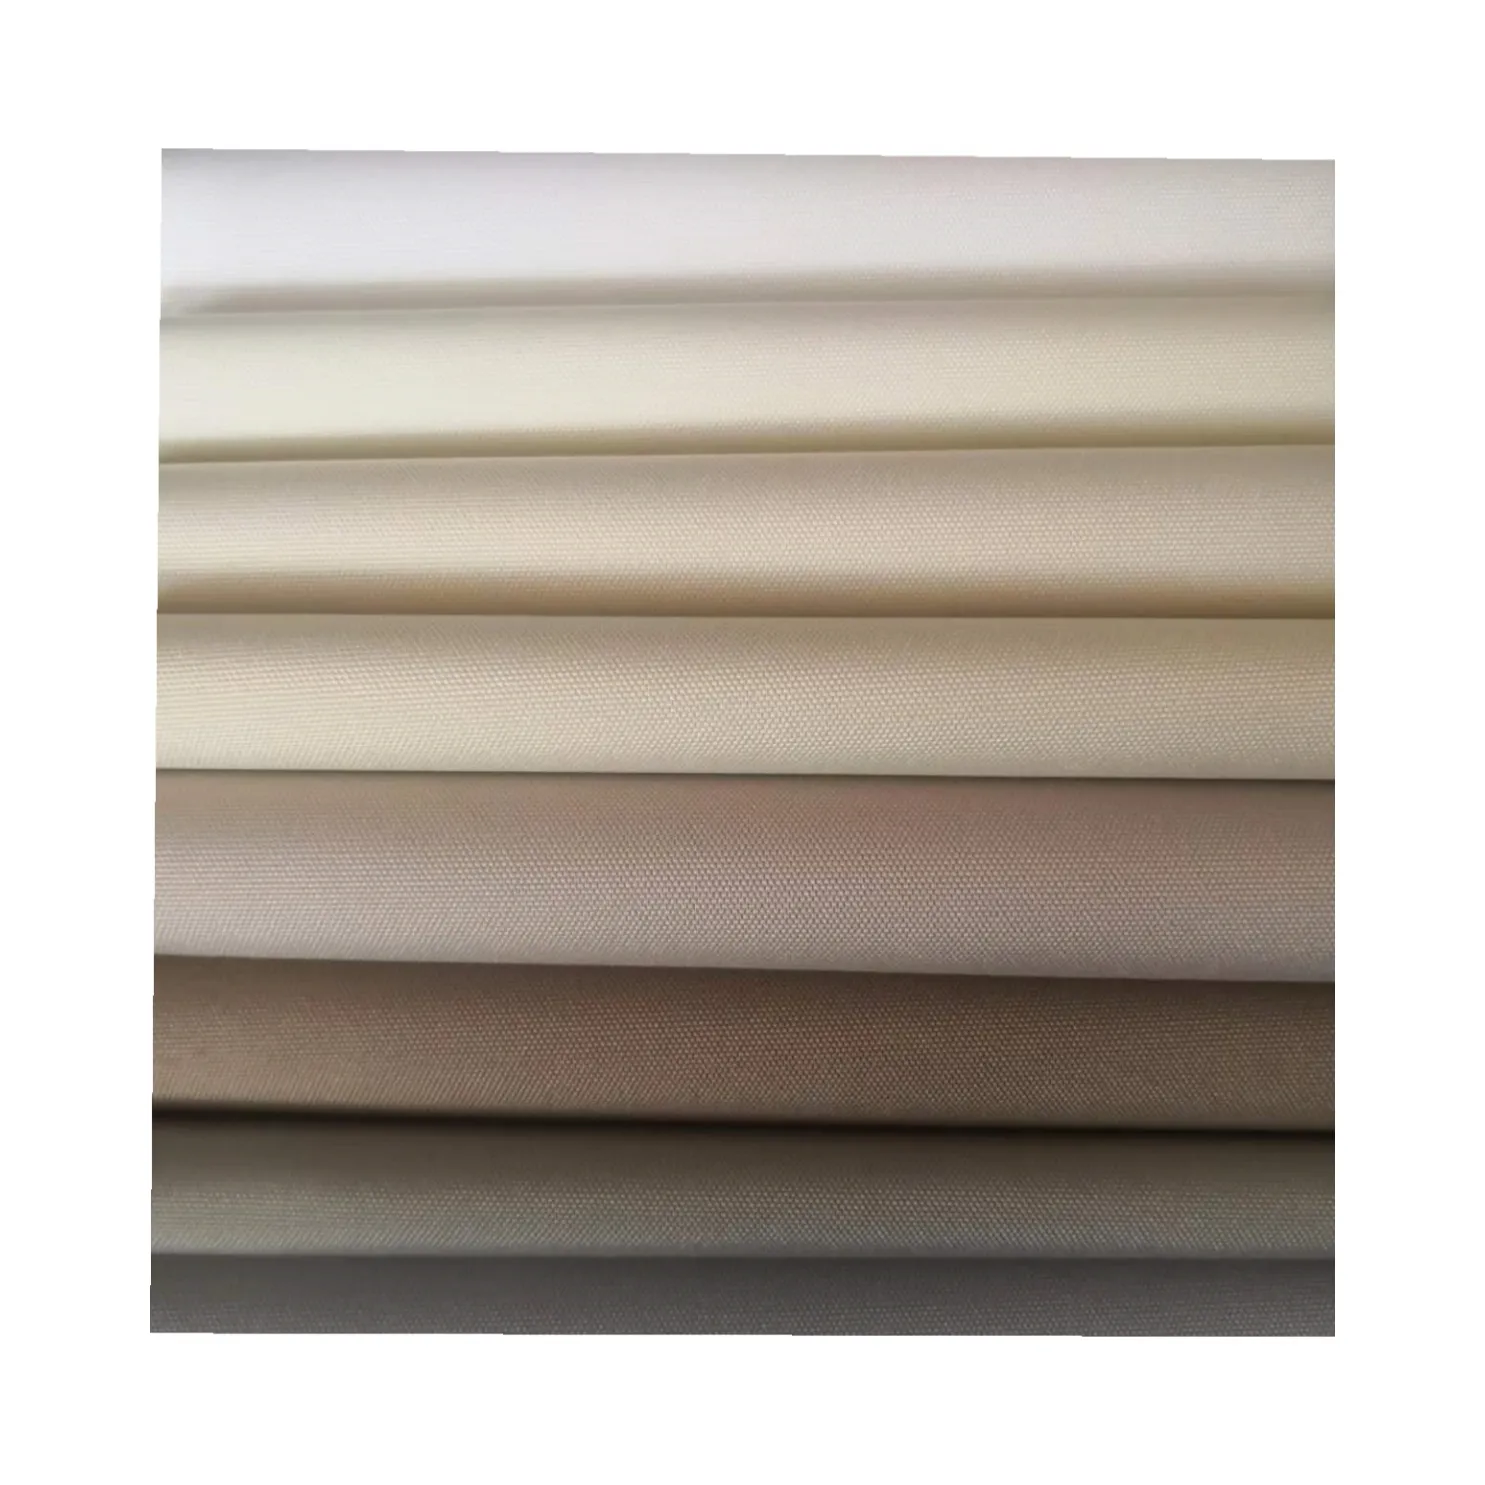 Tessuto per tende a rullo rivestito in schiuma bianca impermeabile oscurante con Design stampato digitale personalizzato per la decorazione della finestra